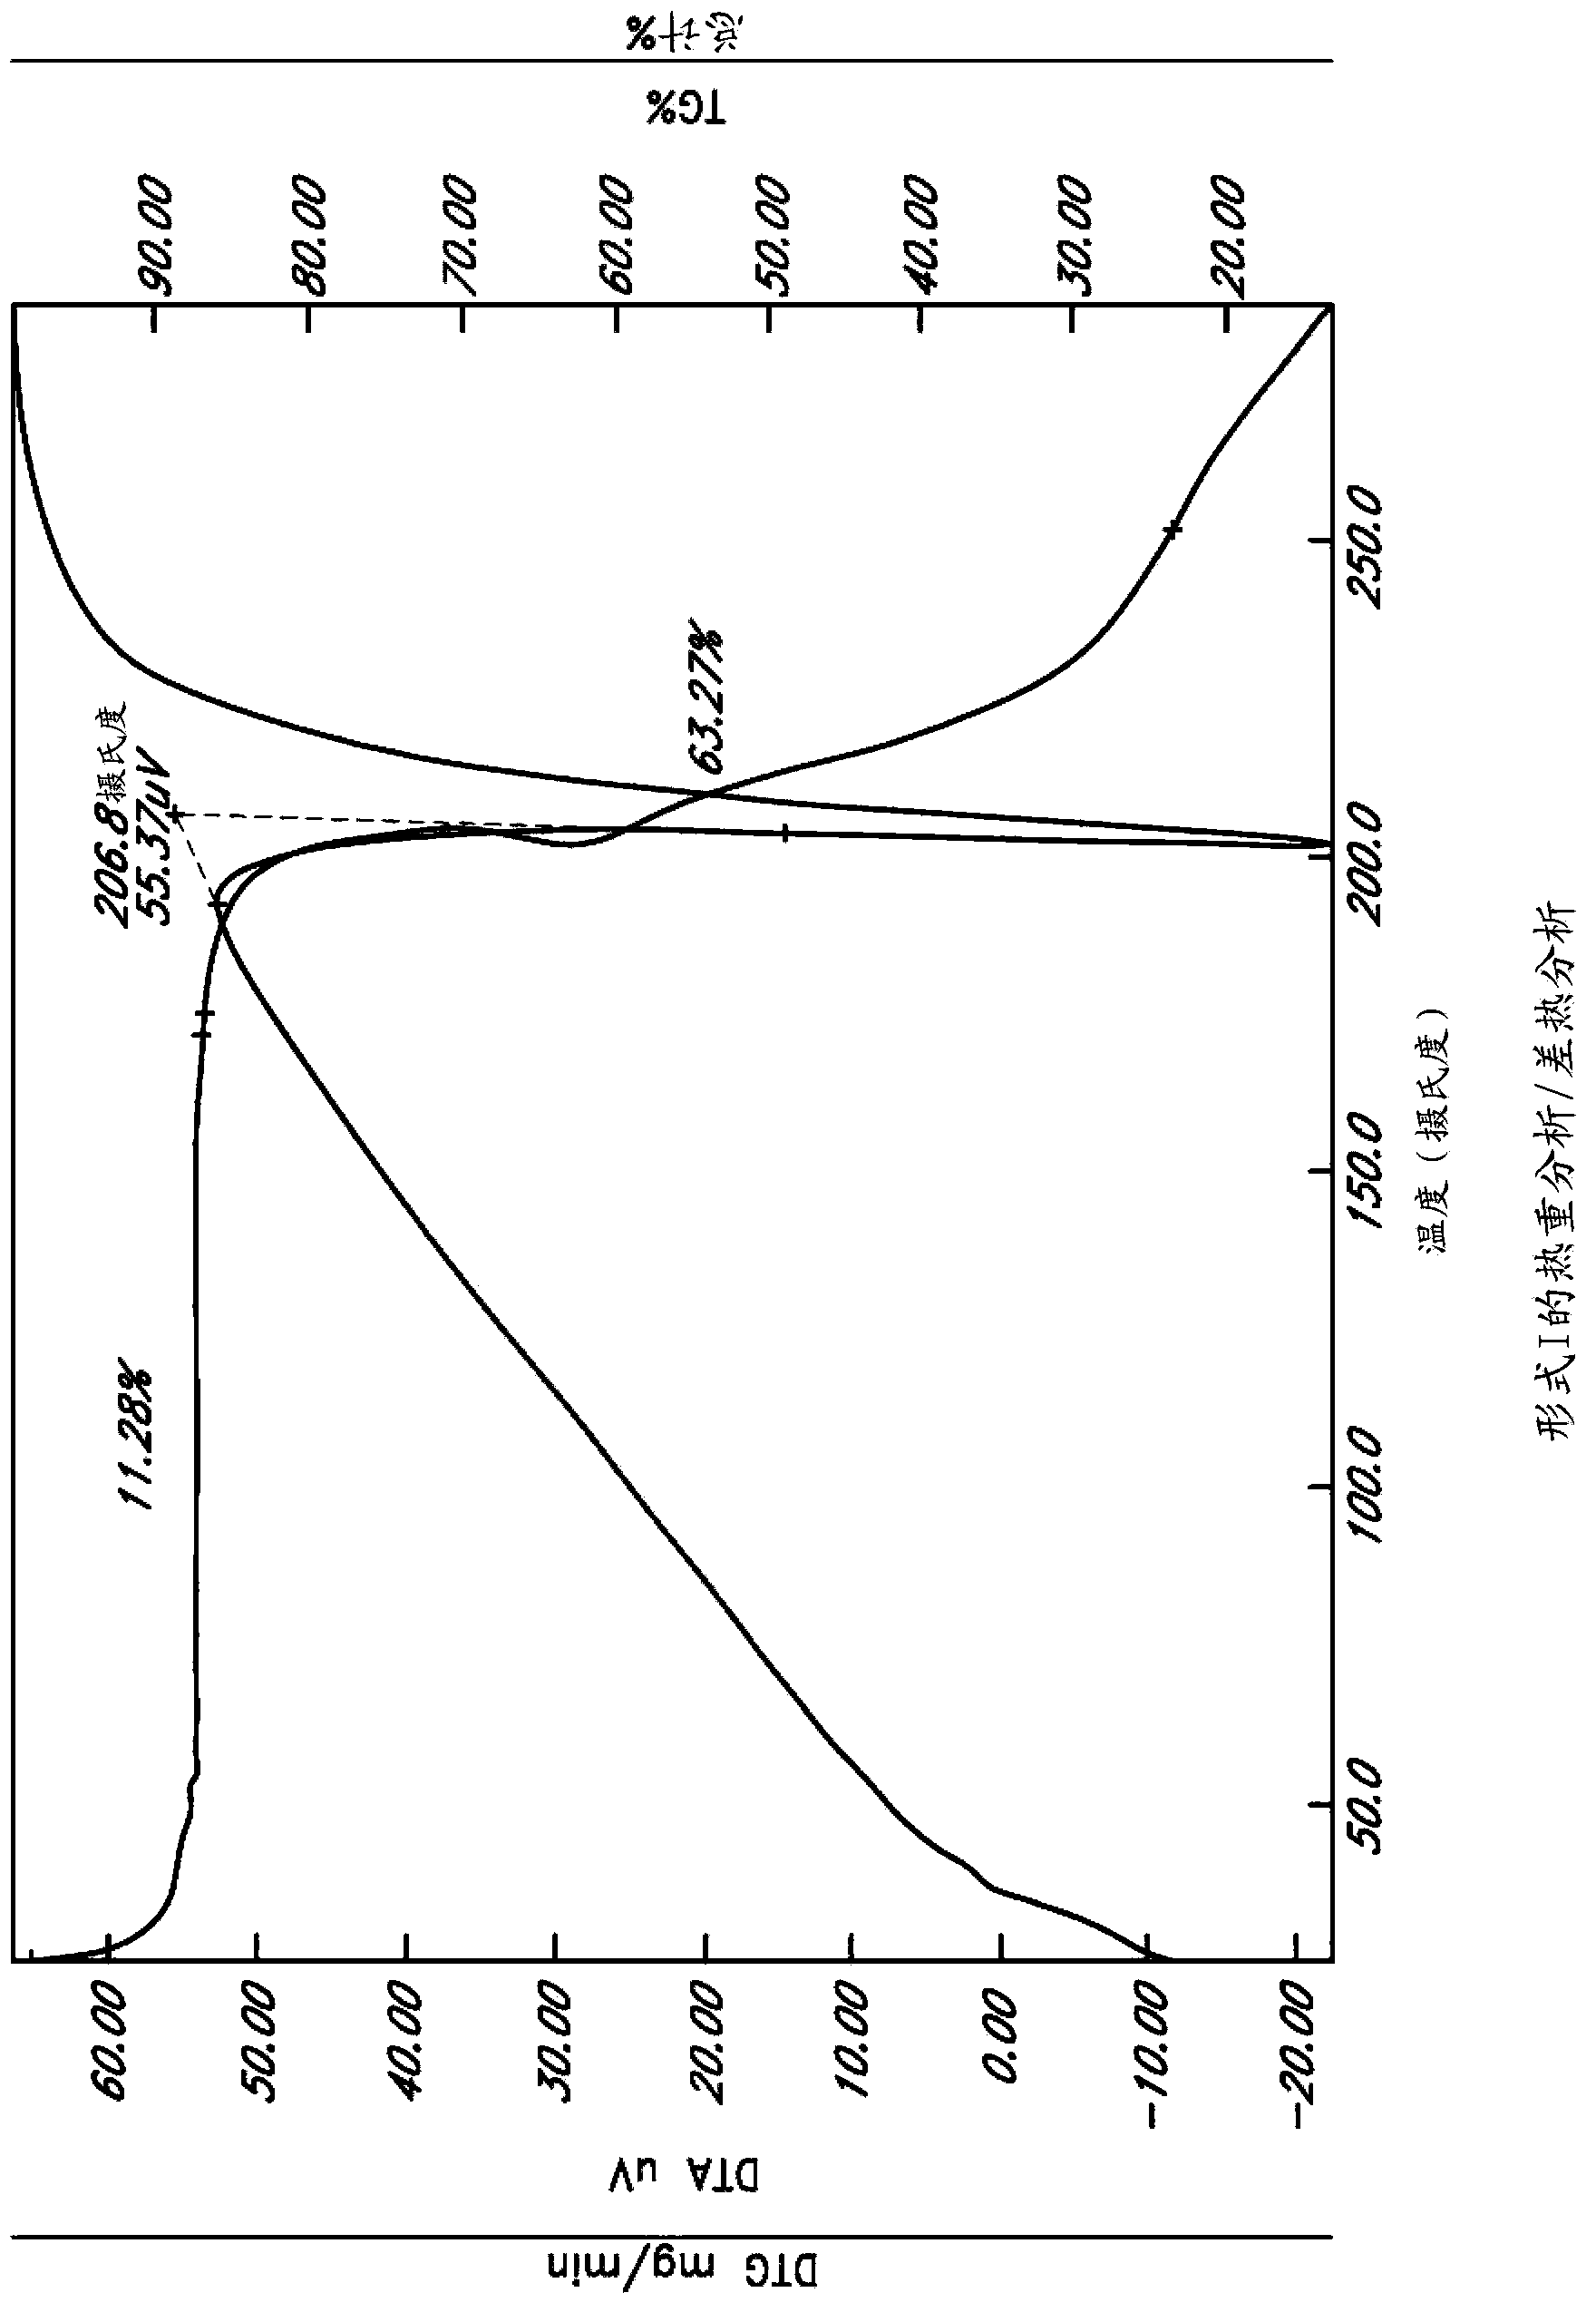 Methods of making L-ornithine phenyl acetate